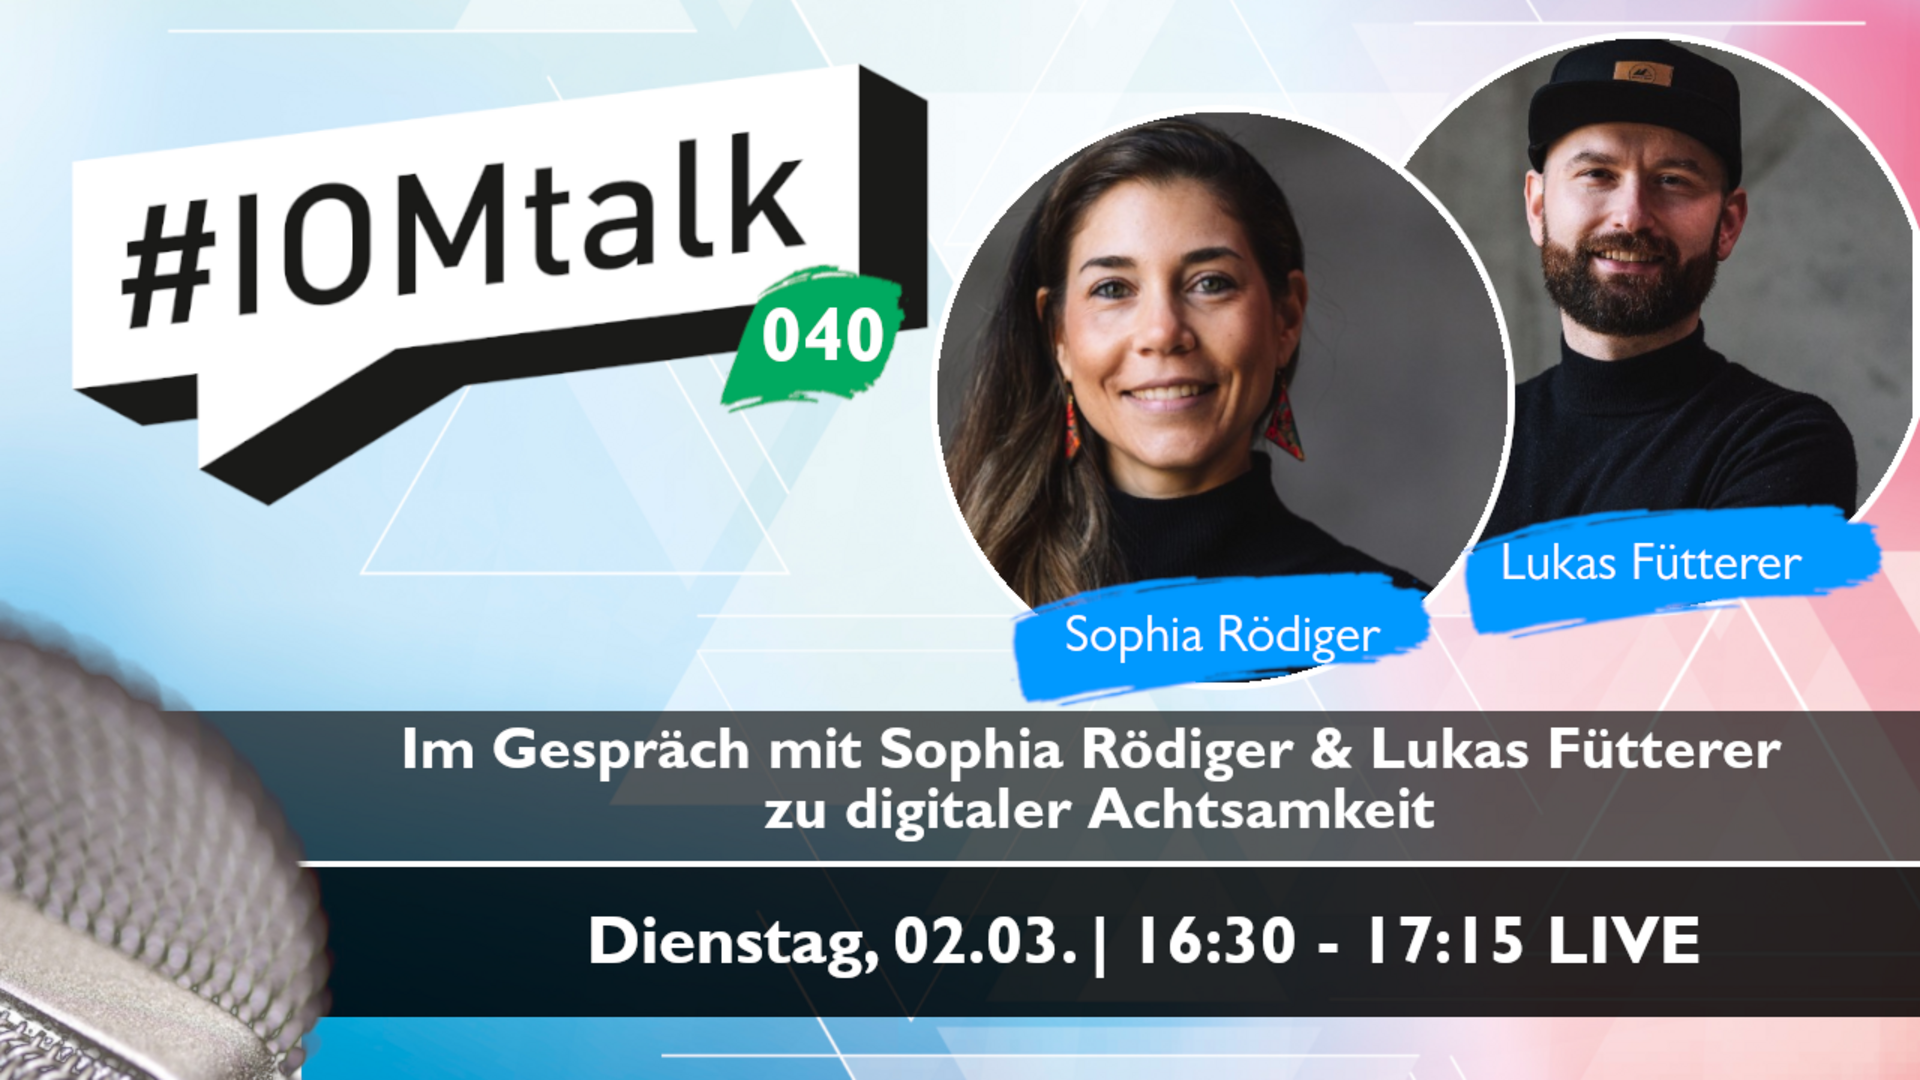 Im Gespräch mit Sophia Rödiger & Lukas Fütterer zu digitaler Achtsamkeit